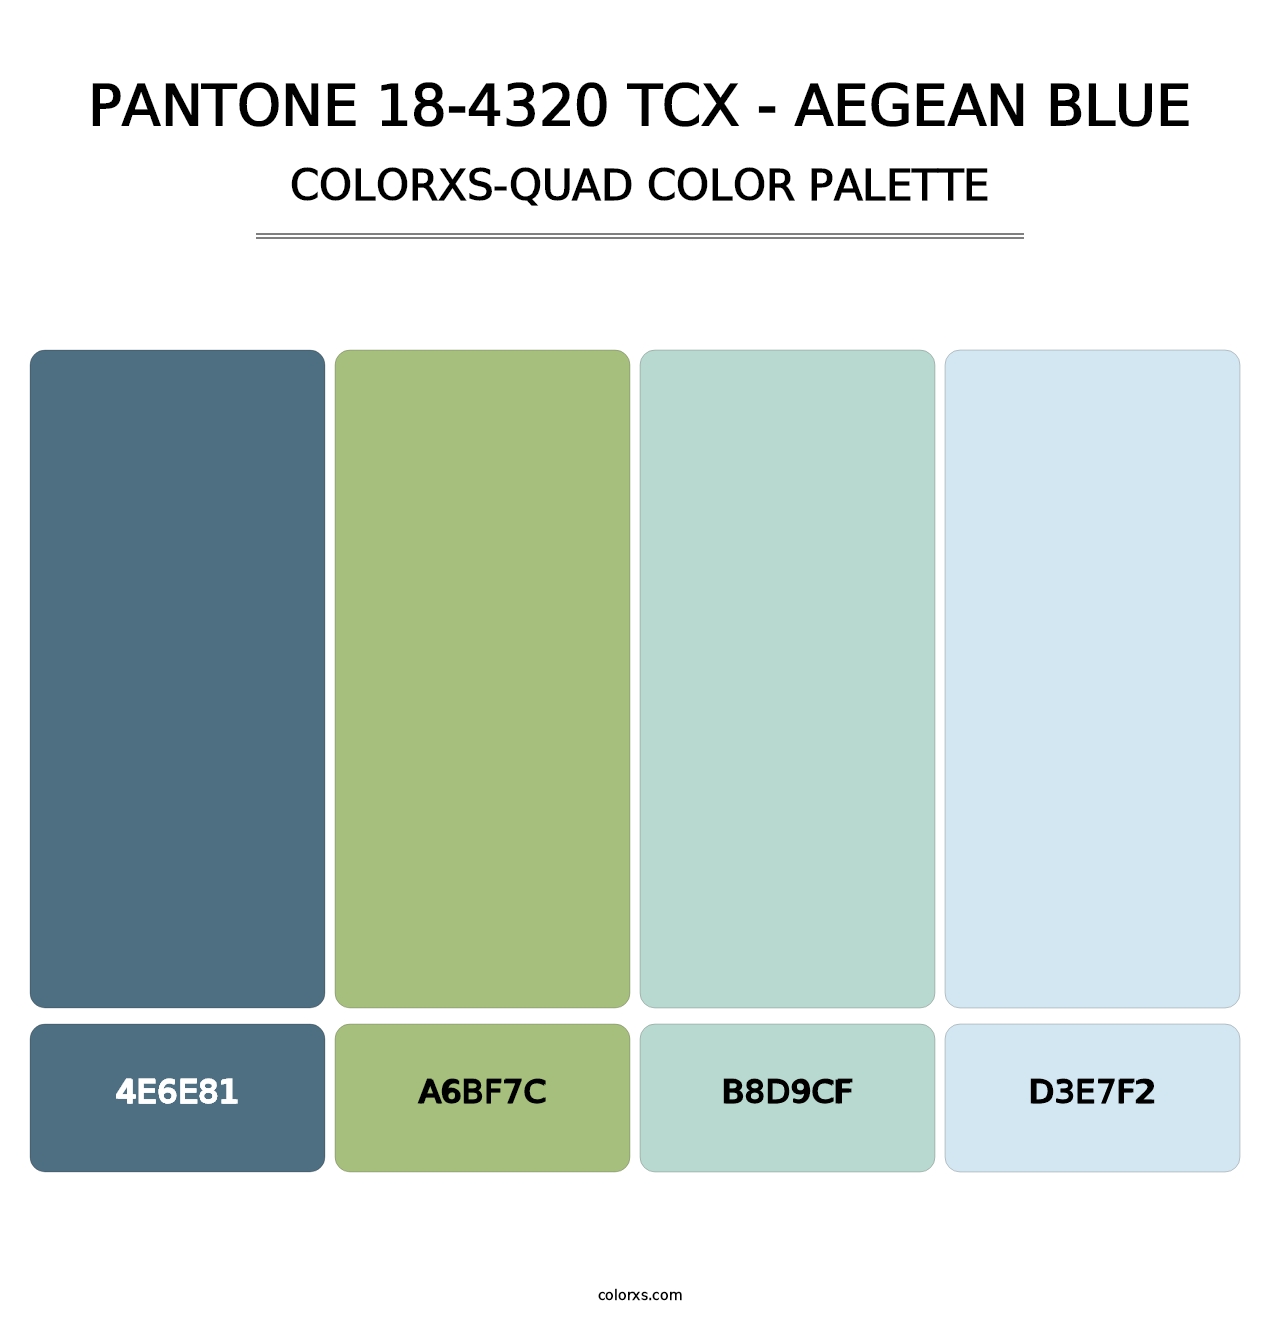 PANTONE 18-4320 TCX - Aegean Blue - Colorxs Quad Palette